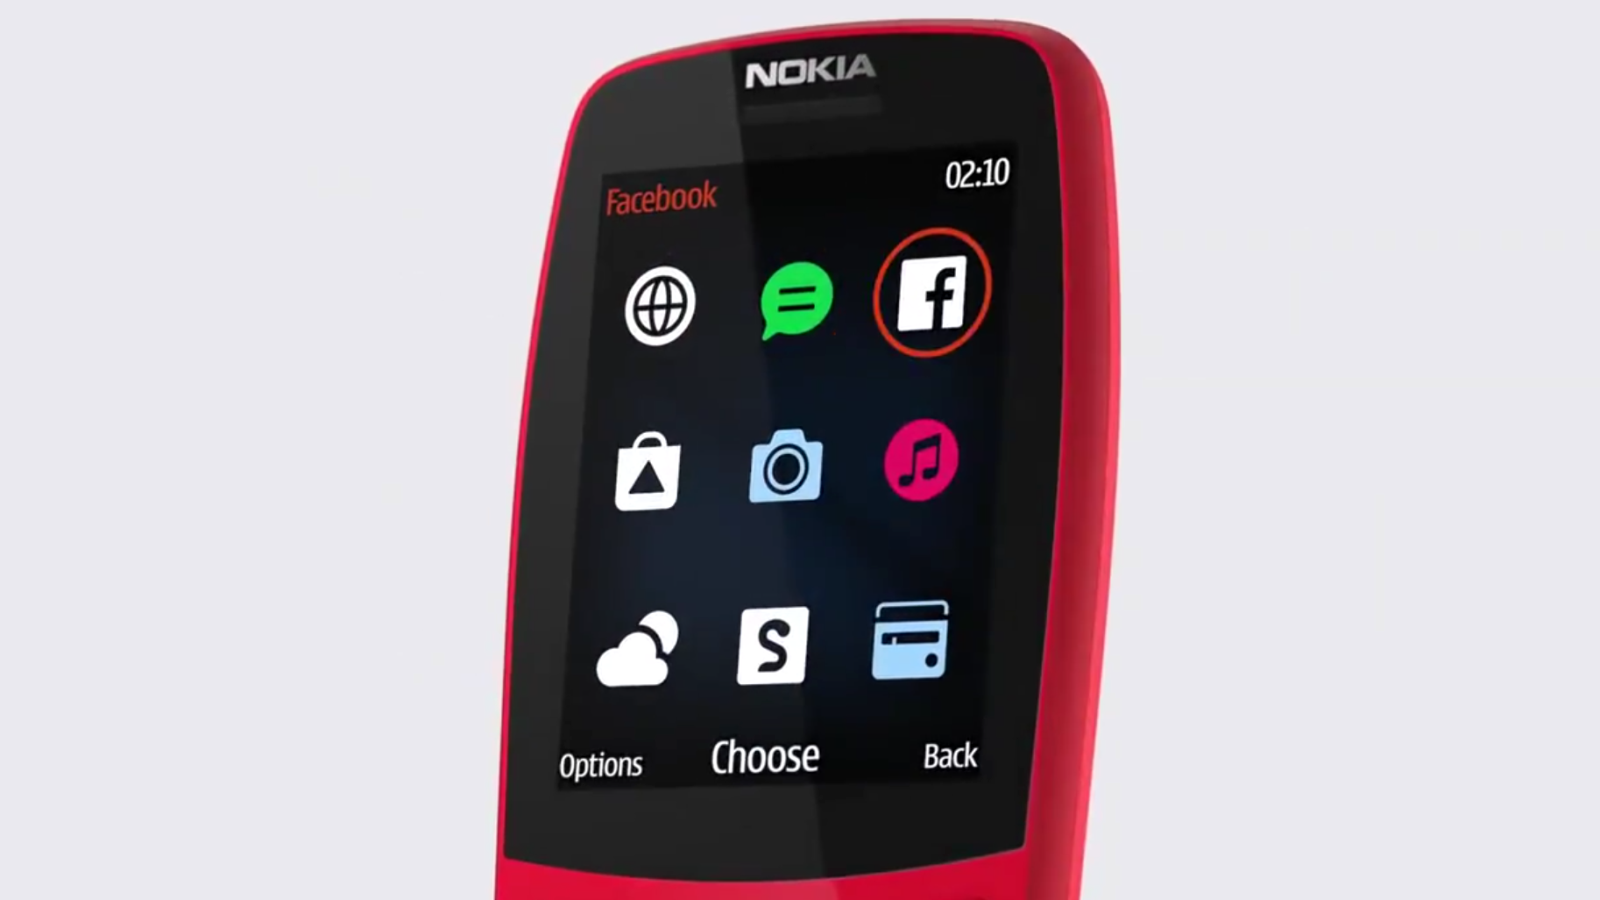 نوکیا ۲۱۰ با قیمت ۳۵ دلار یک موبایل ساده دکمه ای در سال ۲۰۱۹ است